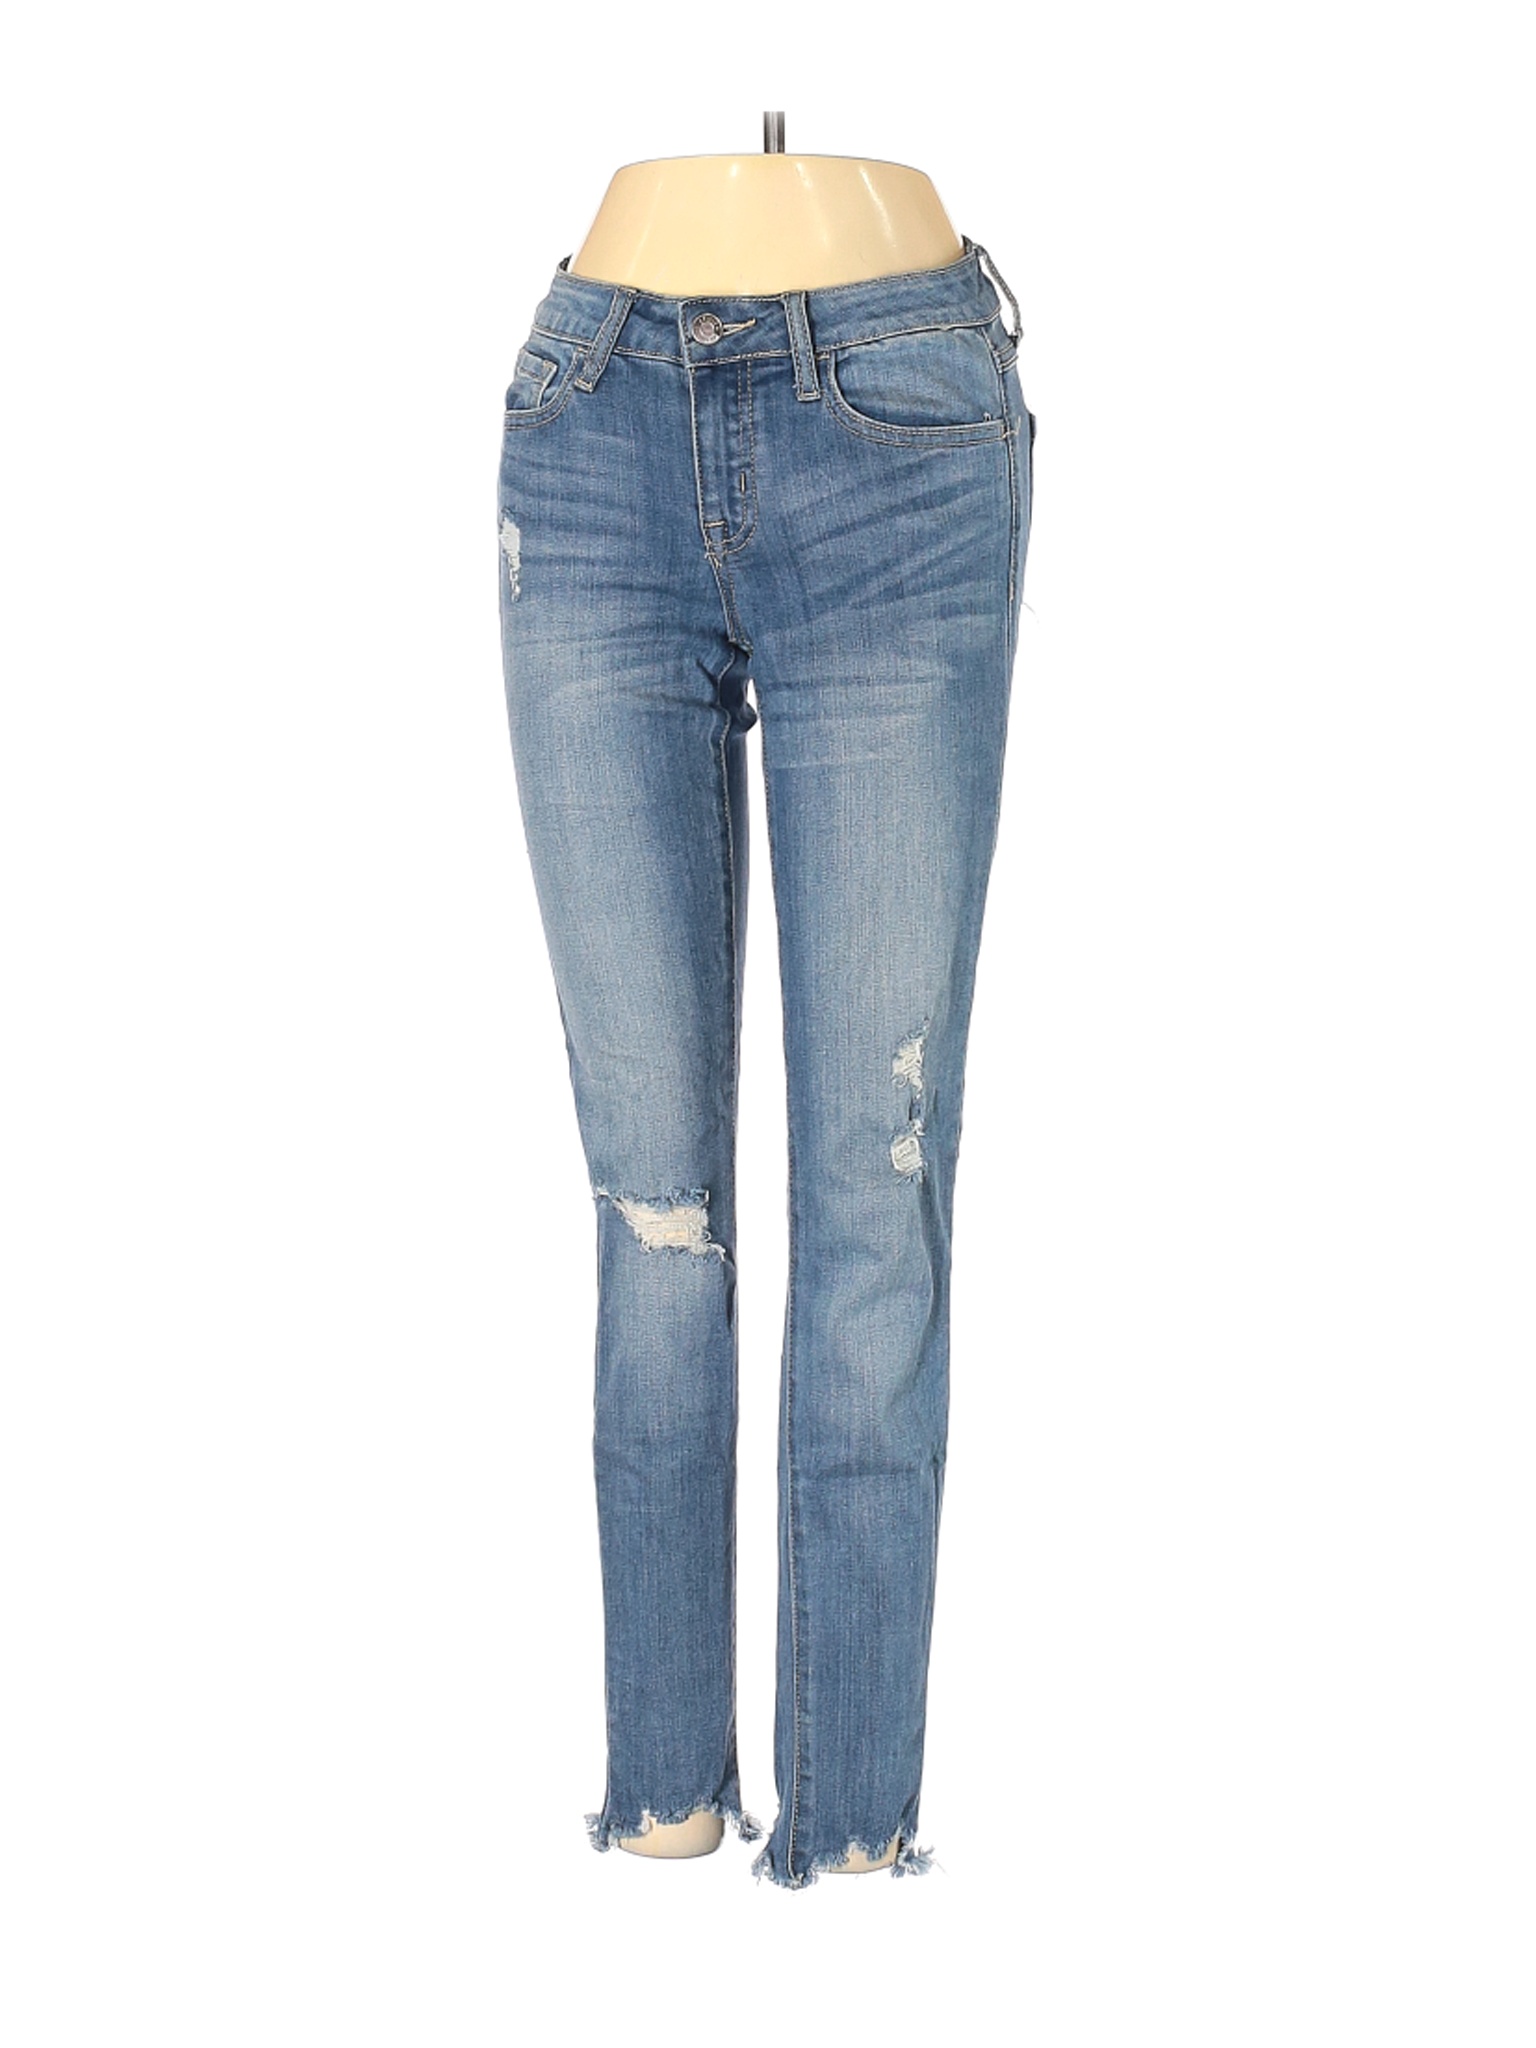 Klique B Women Blue Jeans 24W | eBay